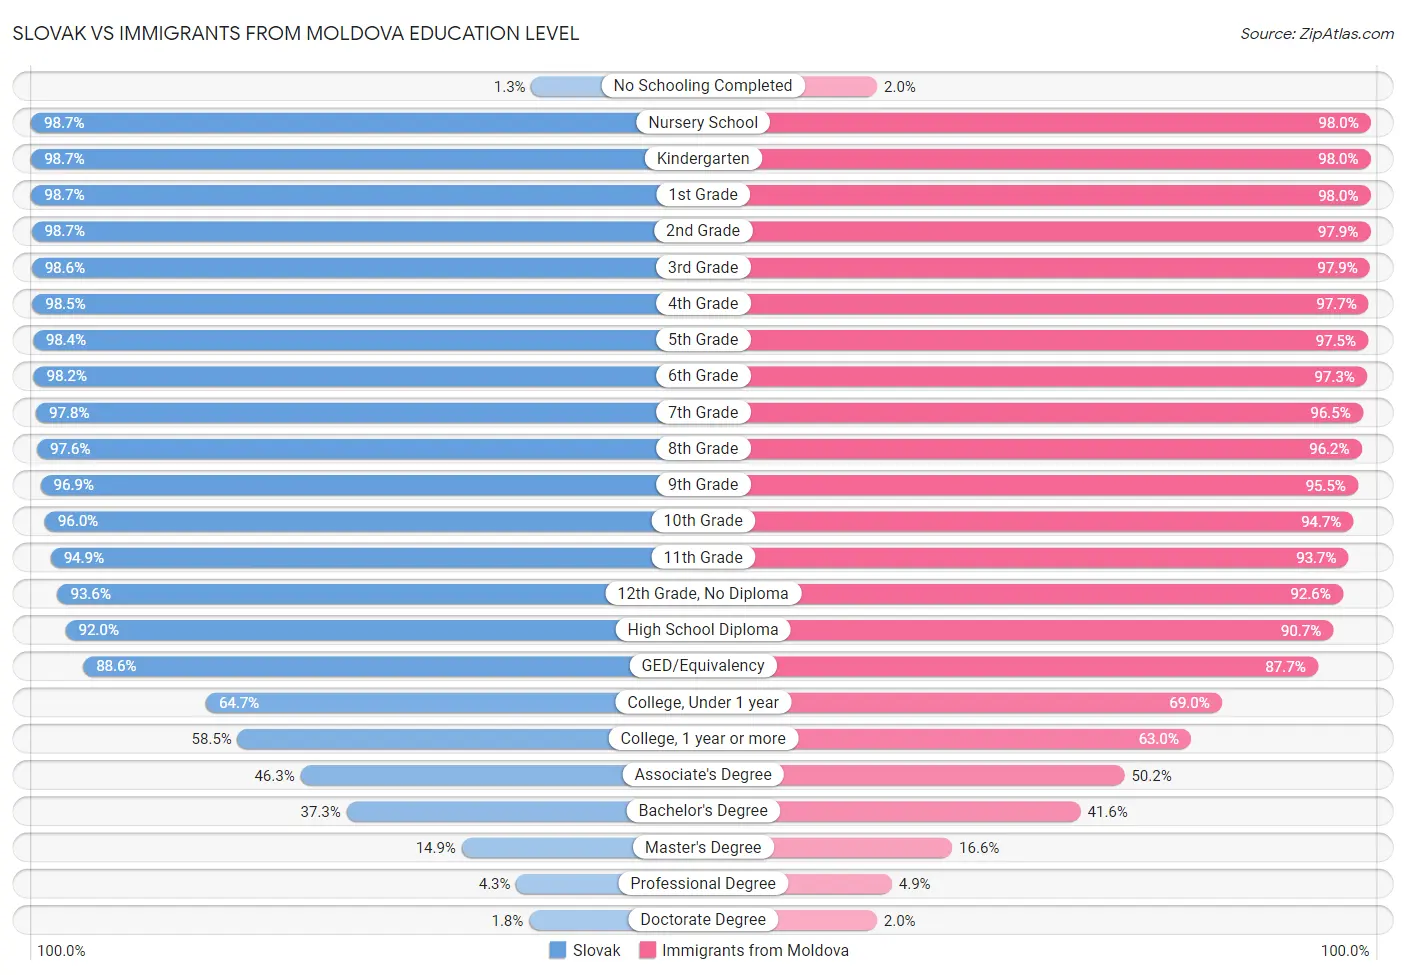 Slovak vs Immigrants from Moldova Education Level